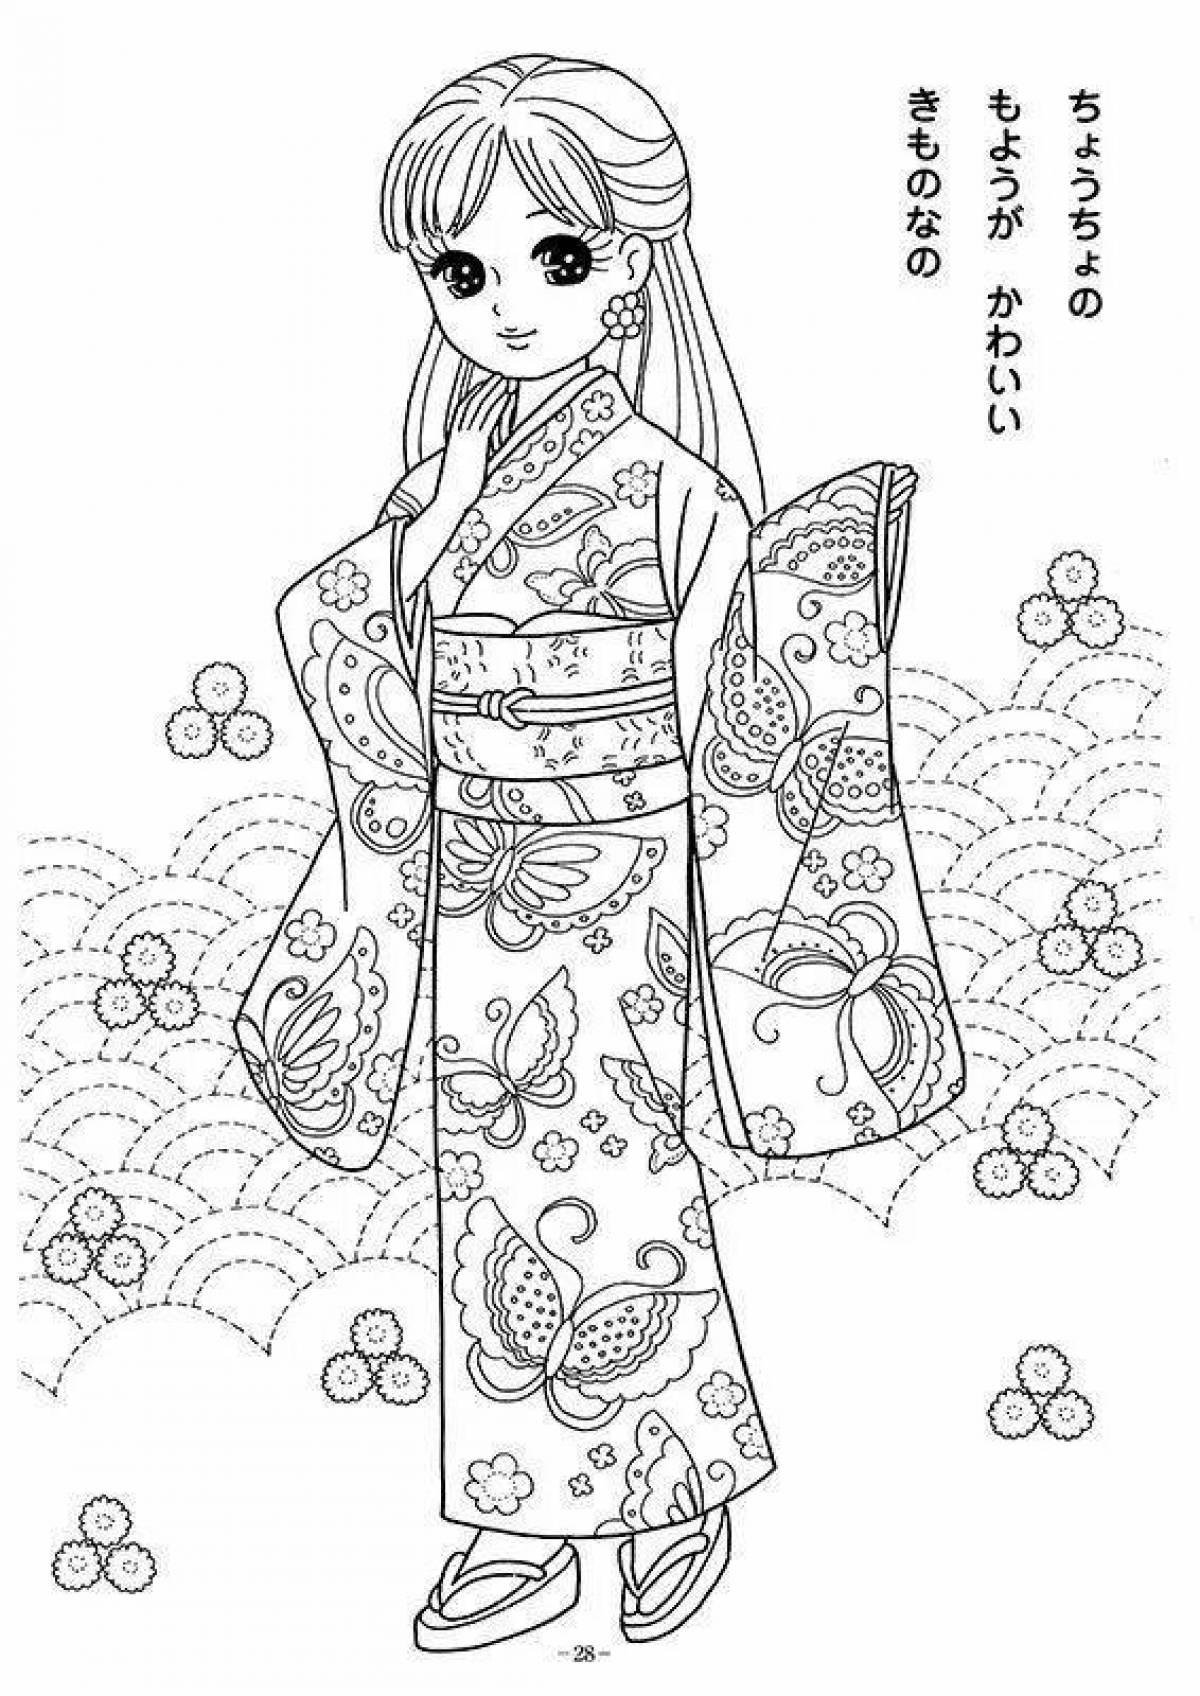 Luxurious Japanese woman in kimono